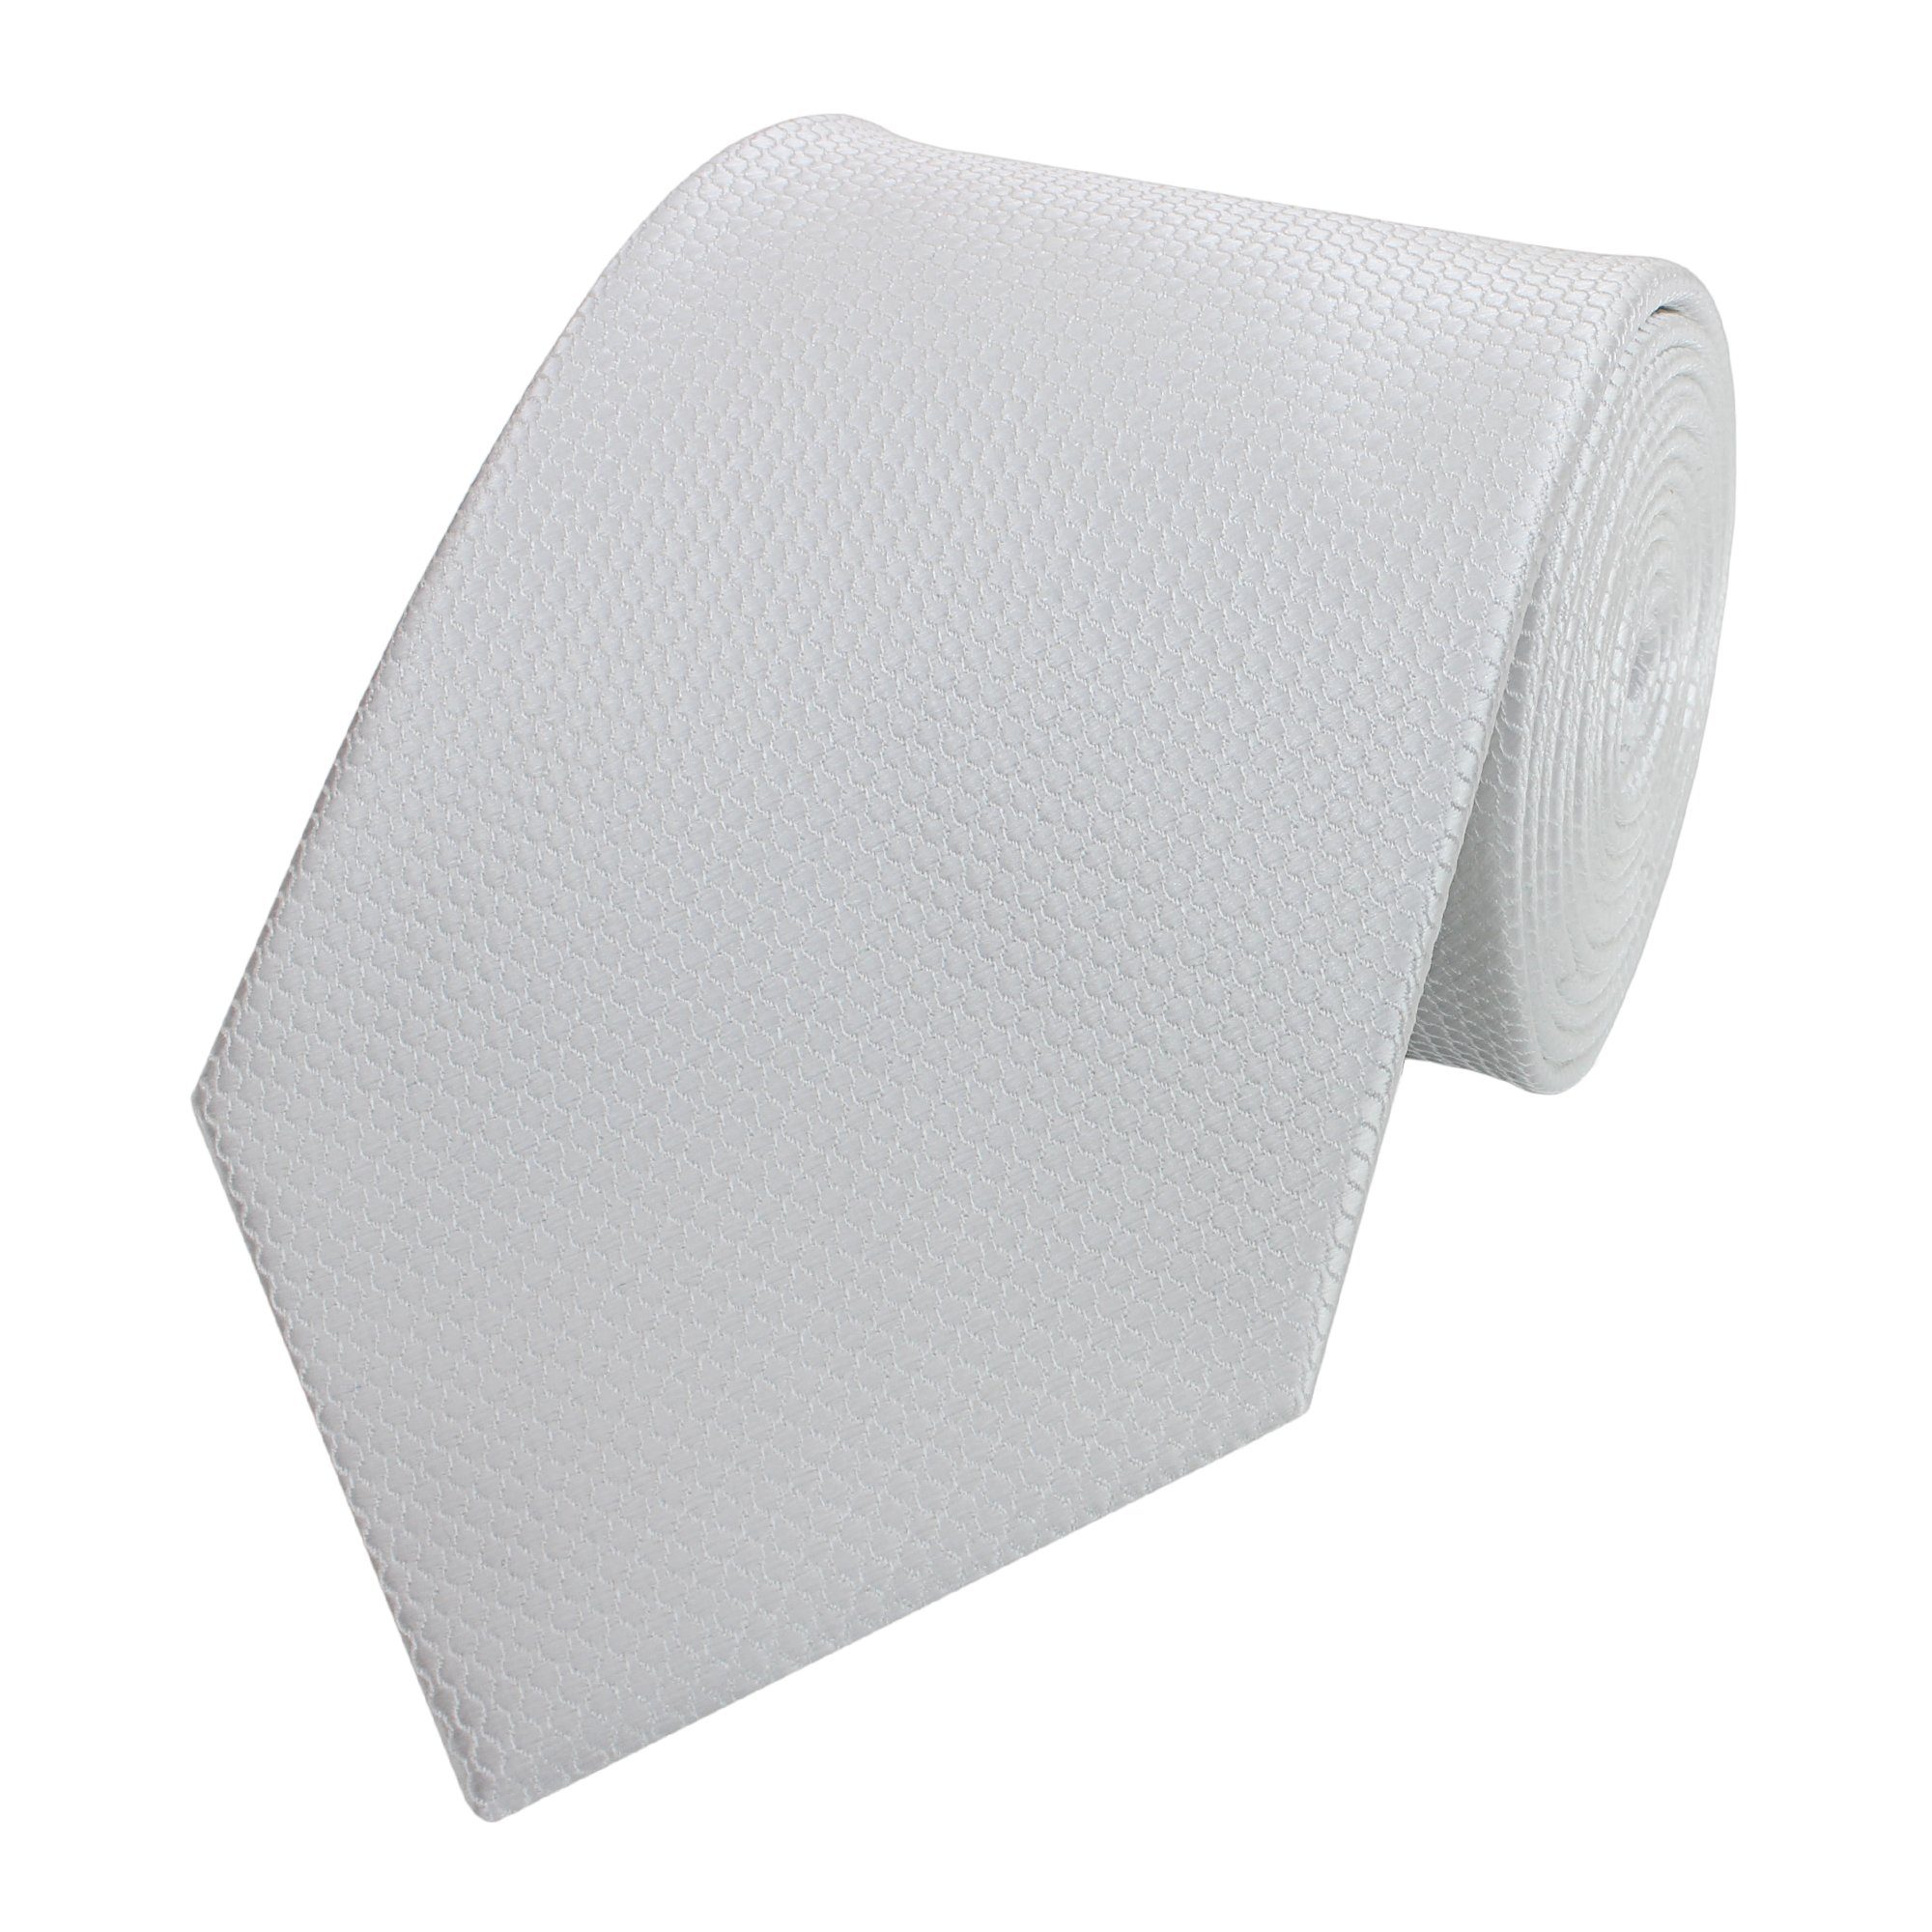 Fabio Farini Krawatte Herren Krawatte Weiß - verschiedene Weiße Männer Schlips in 8cm (Unifarben) Breit (8cm), Weiß - Manhattan Mist